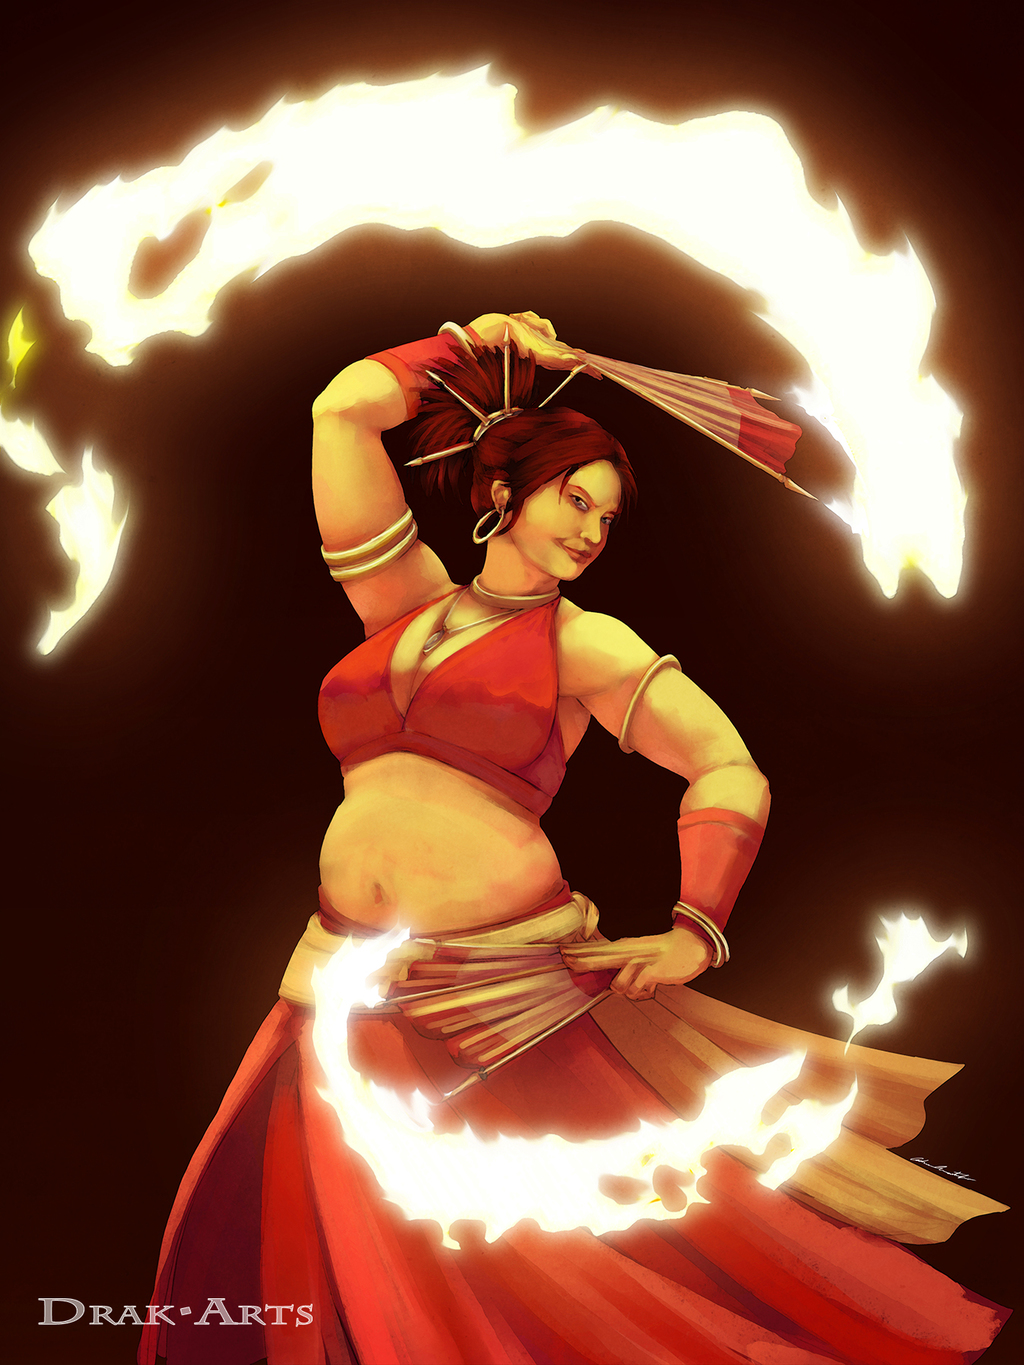 The Fire Dancer